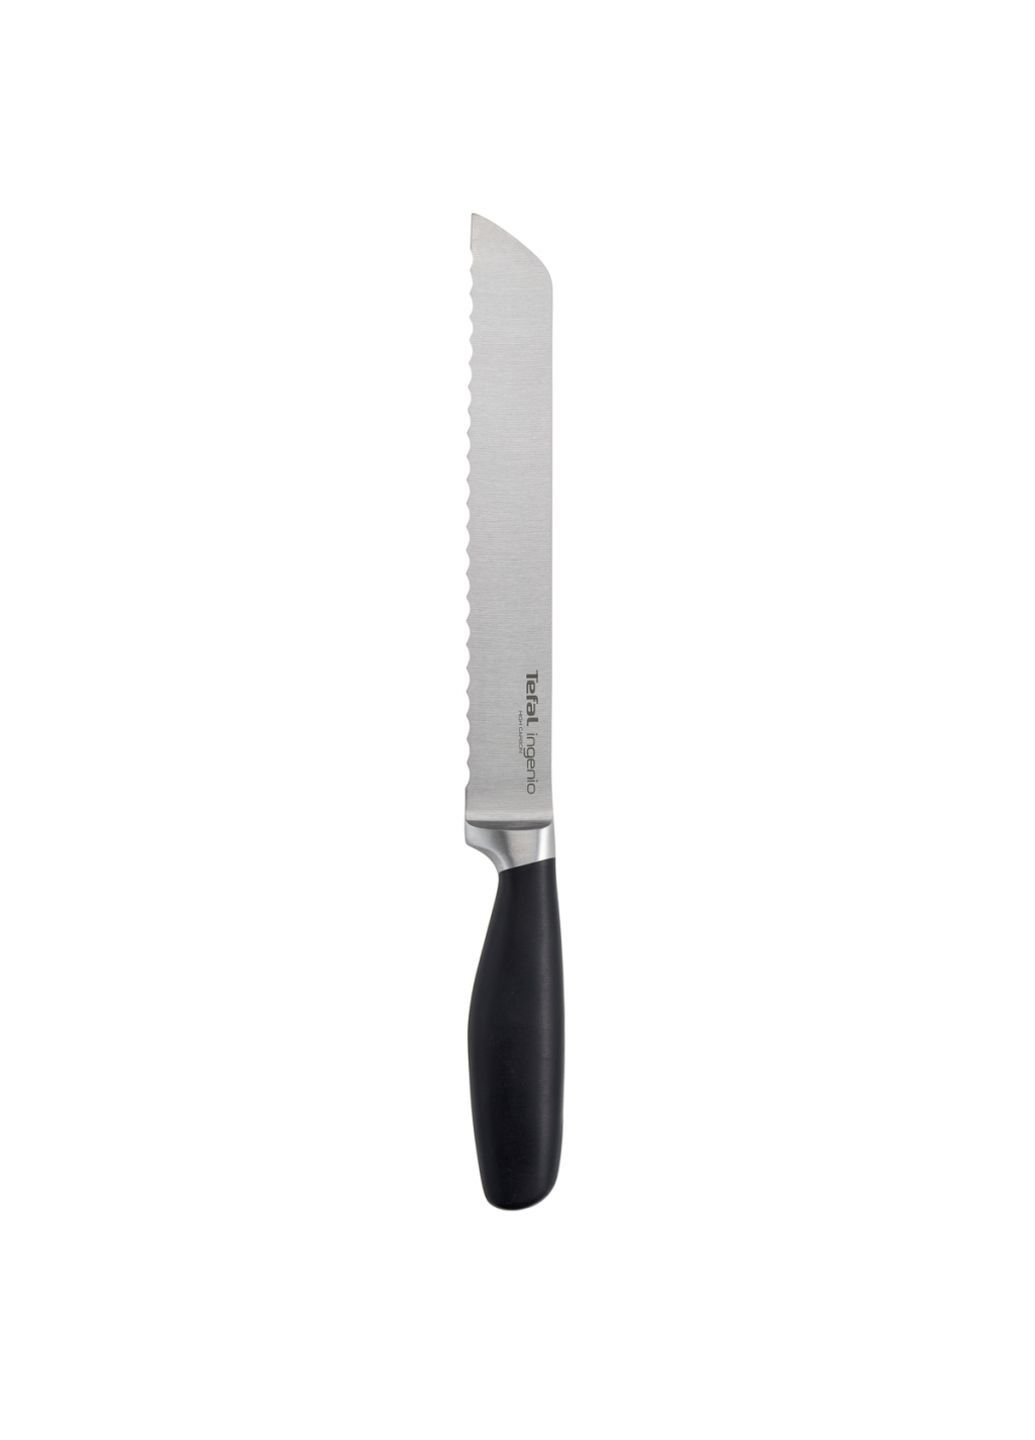 Кухонный нож Ingenio для хлеба 20 см (K0910414) Tefal (254077850)